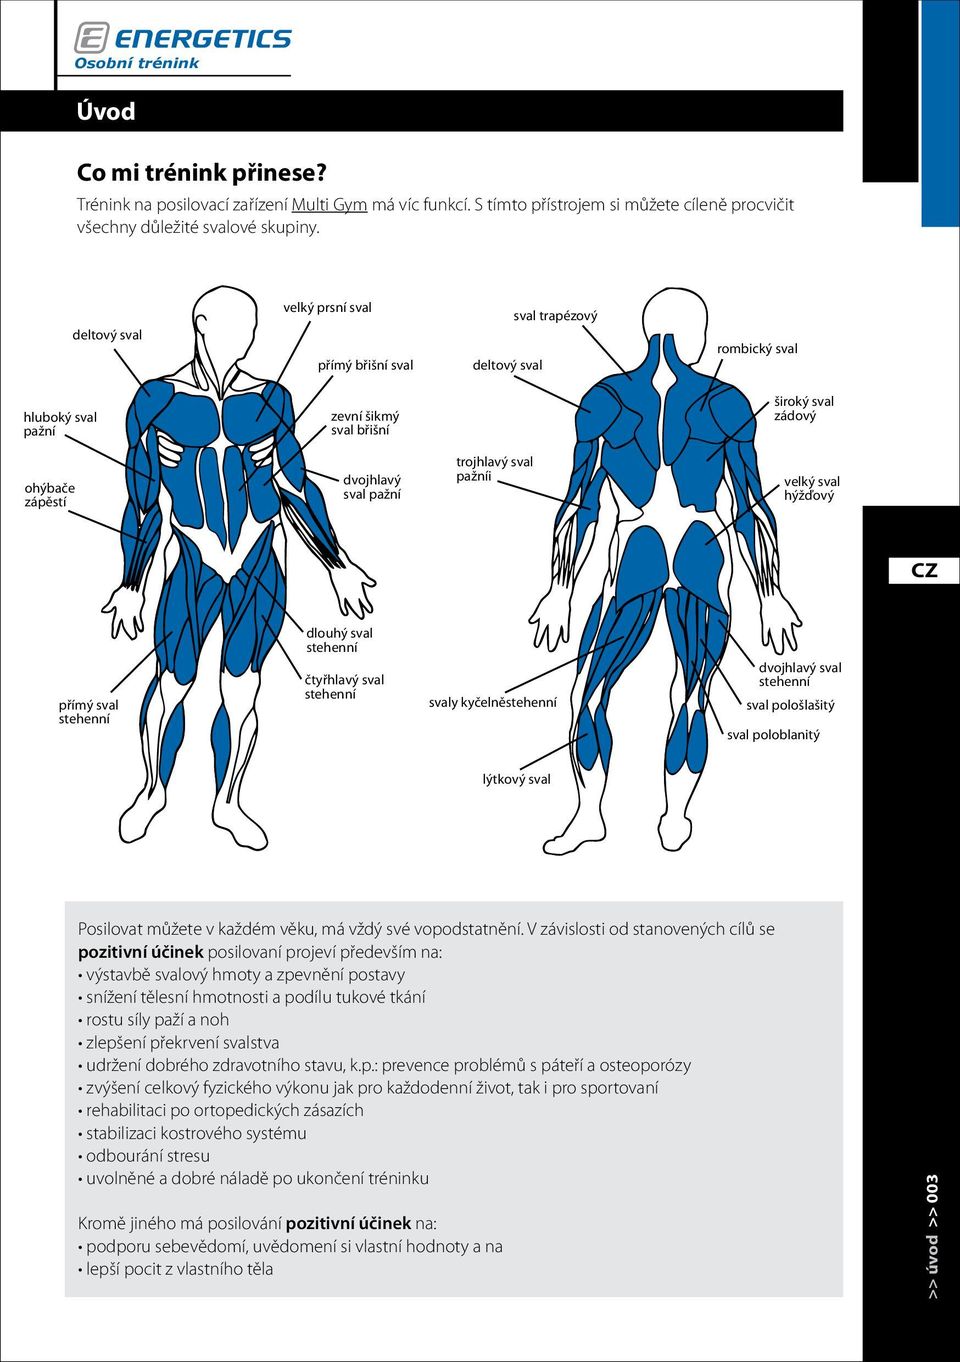 sval pažníi velký sval hýžďový přímý sval stehenní dlouhý sval stehenní čtyřhlavý sval stehenní svaly kyčelněstehenní dvojhlavý sval stehenní sval pološlašitý sval poloblanitý lýtkový sval Posilovat